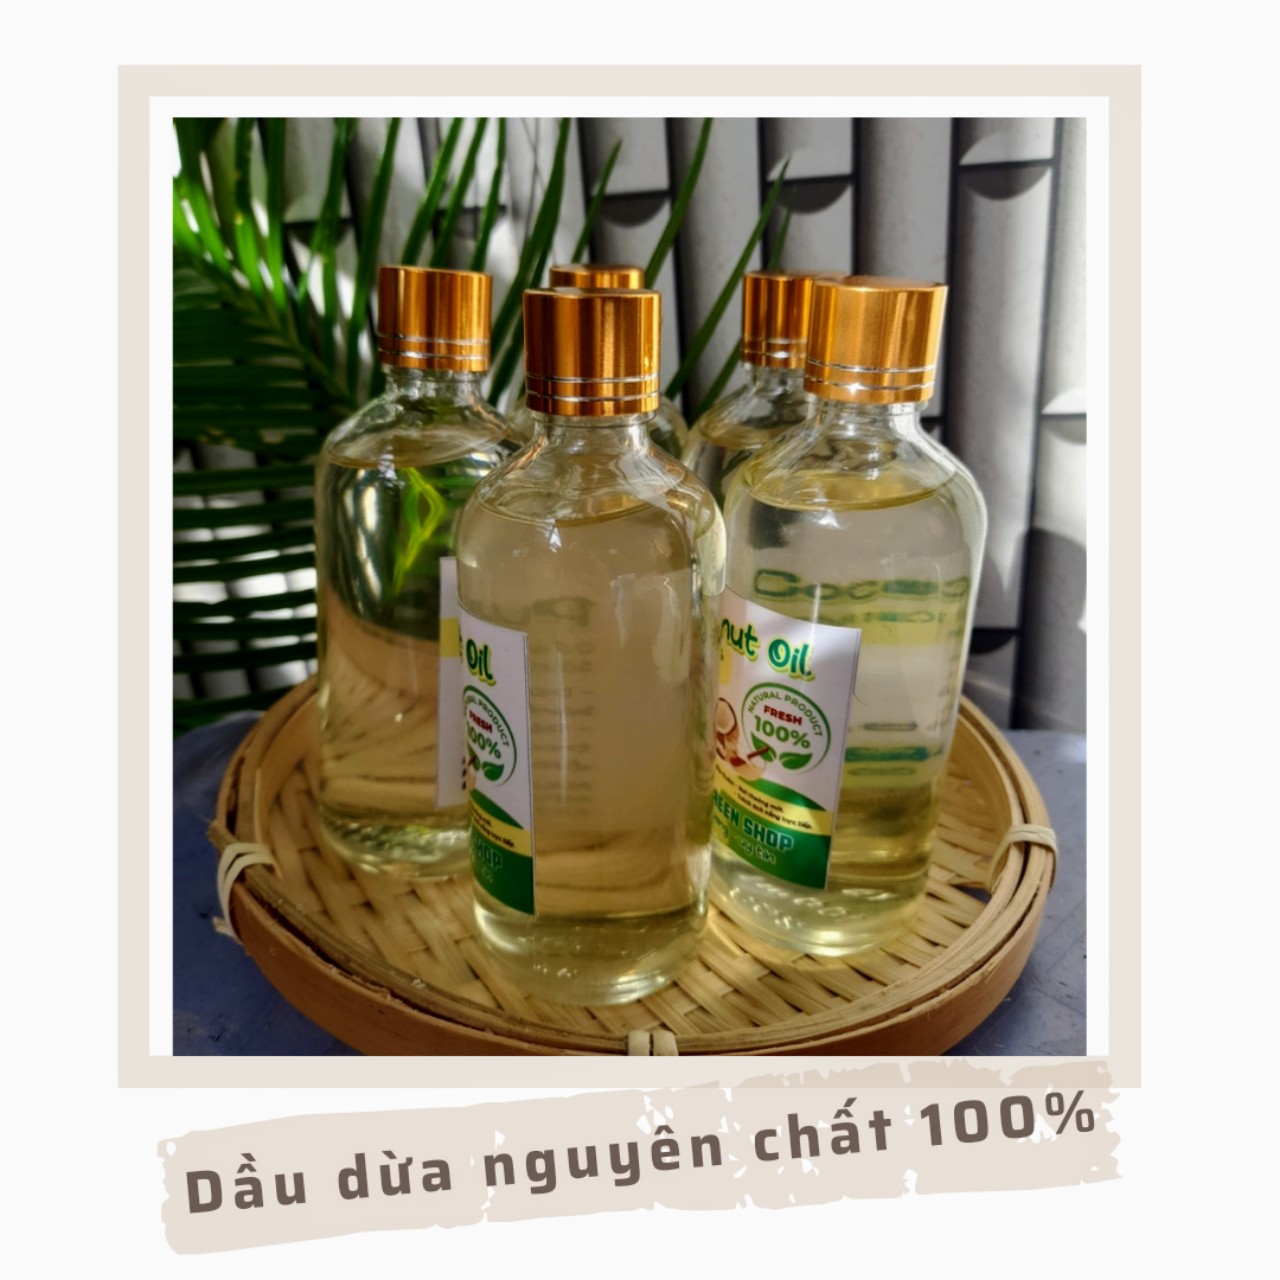 Dầu Dừa Nguyên Chất 100ml, Dầu Dừa sản xuất theo phương pháp Truyền Thống